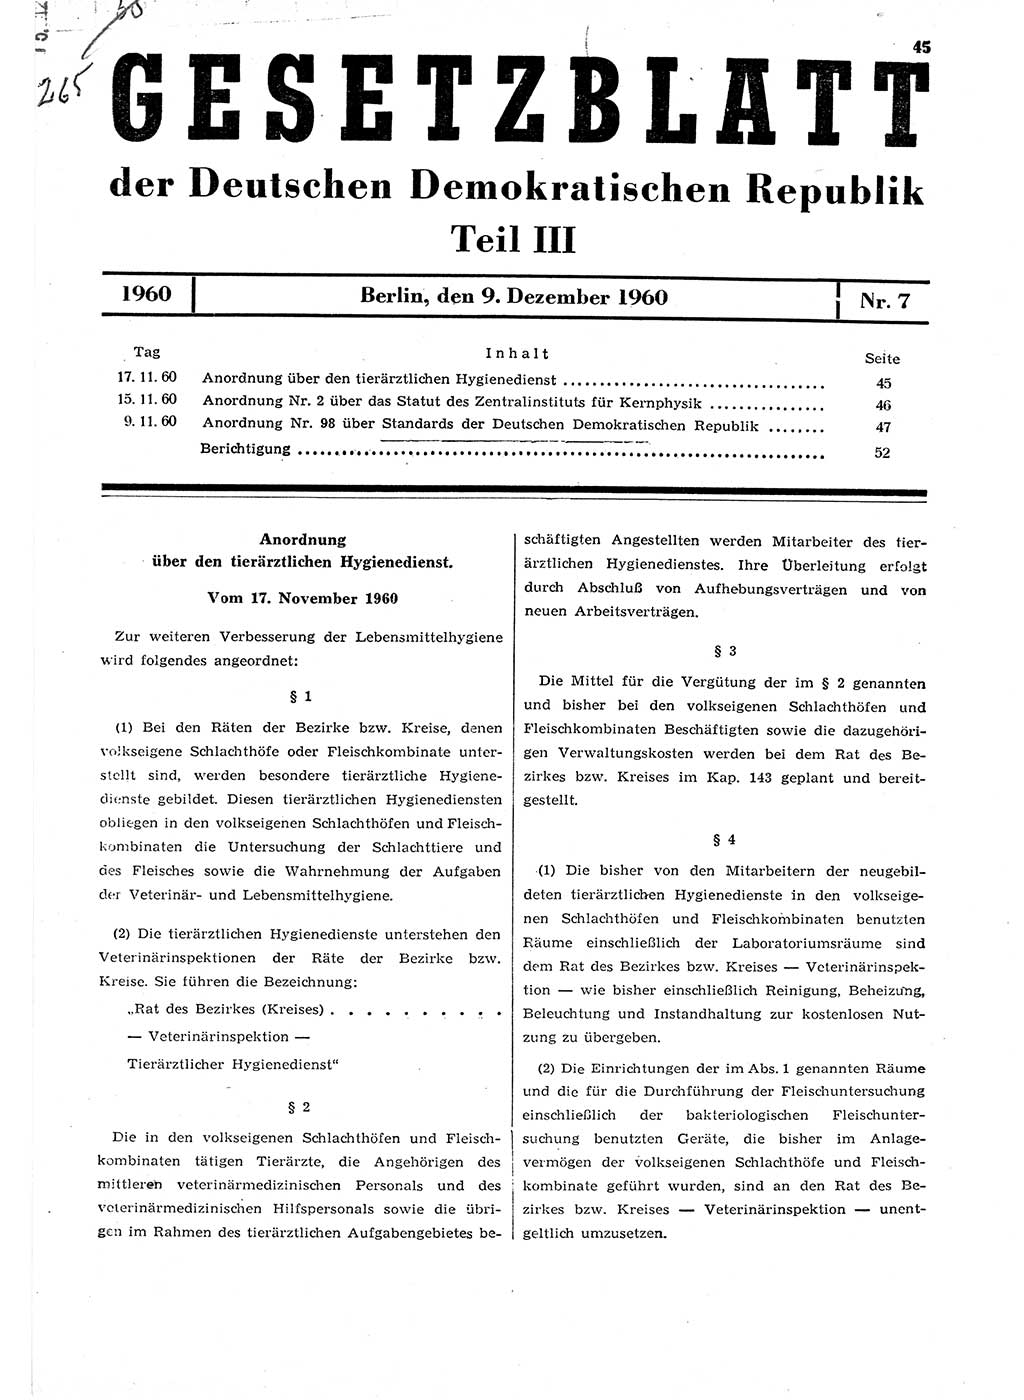 Gesetzblatt (GBl.) der Deutschen Demokratischen Republik (DDR) Teil ⅠⅠⅠ 1960, Seite 45 (GBl. DDR ⅠⅠⅠ 1960, S. 45)